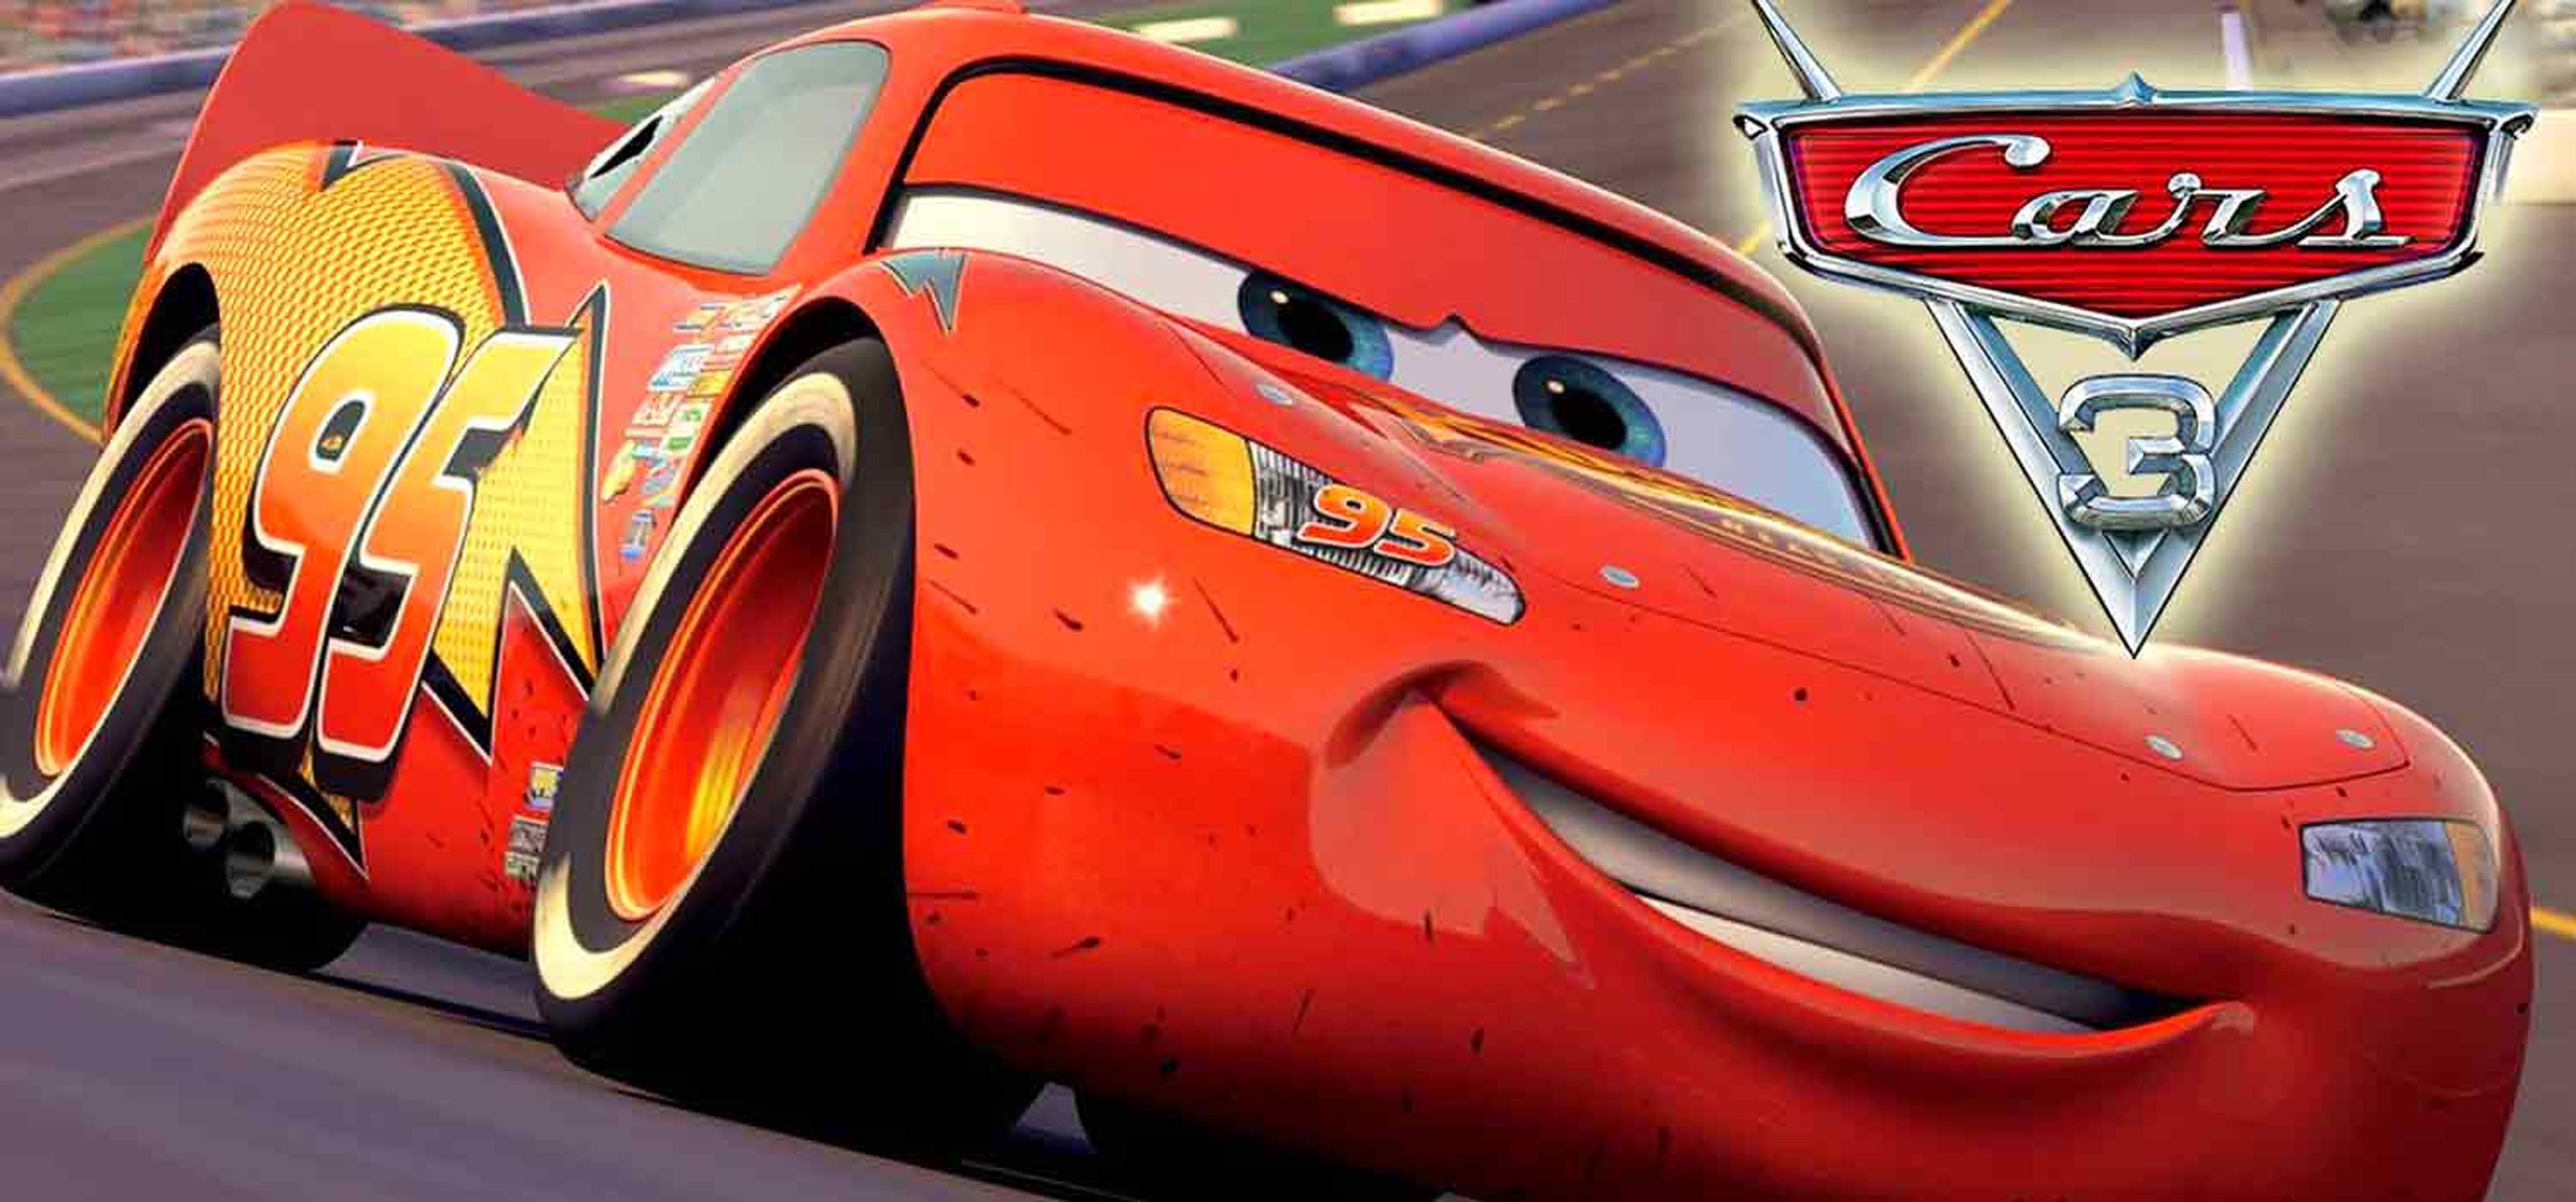 águila Ver a través de Proporcional Cars 3 - Crítica de la nueva película de Disney-Pixar | Hobby Consolas